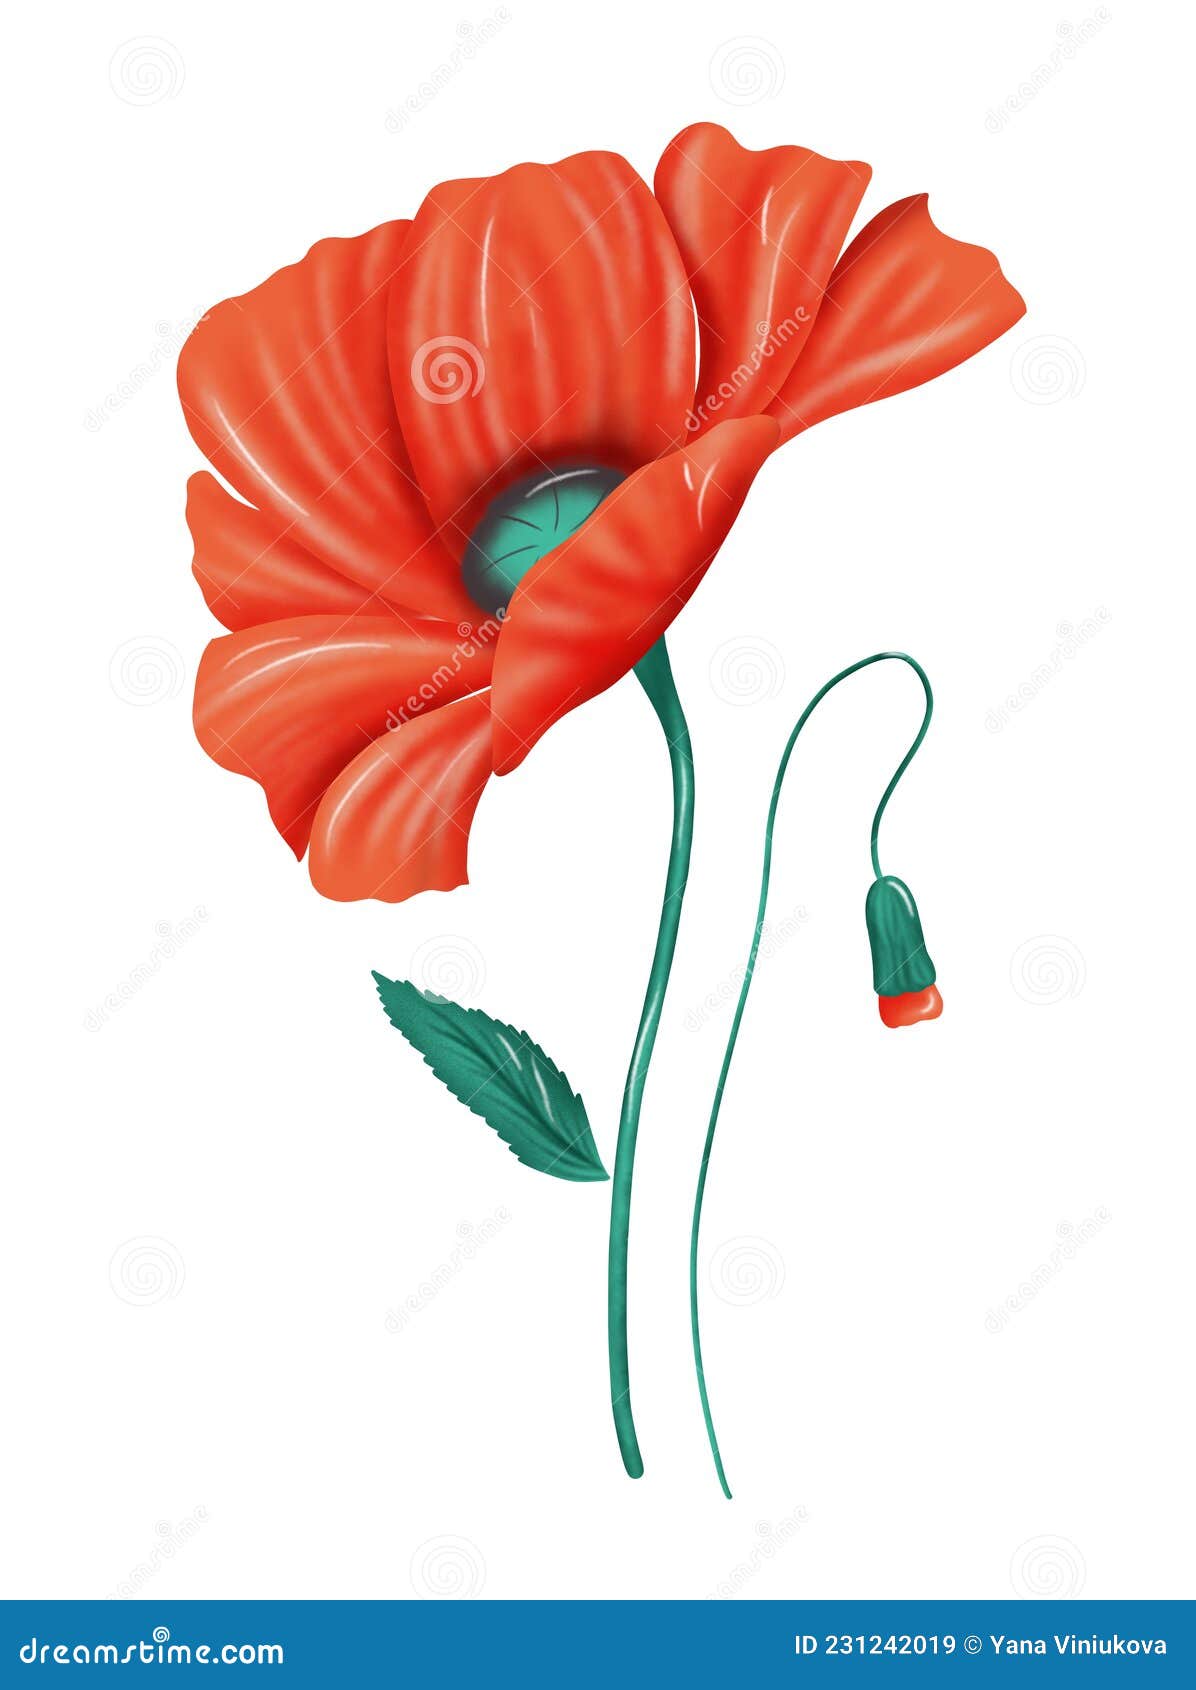 Drawn Red Flower. Raster Poppy on White Background Stock Illustration ...